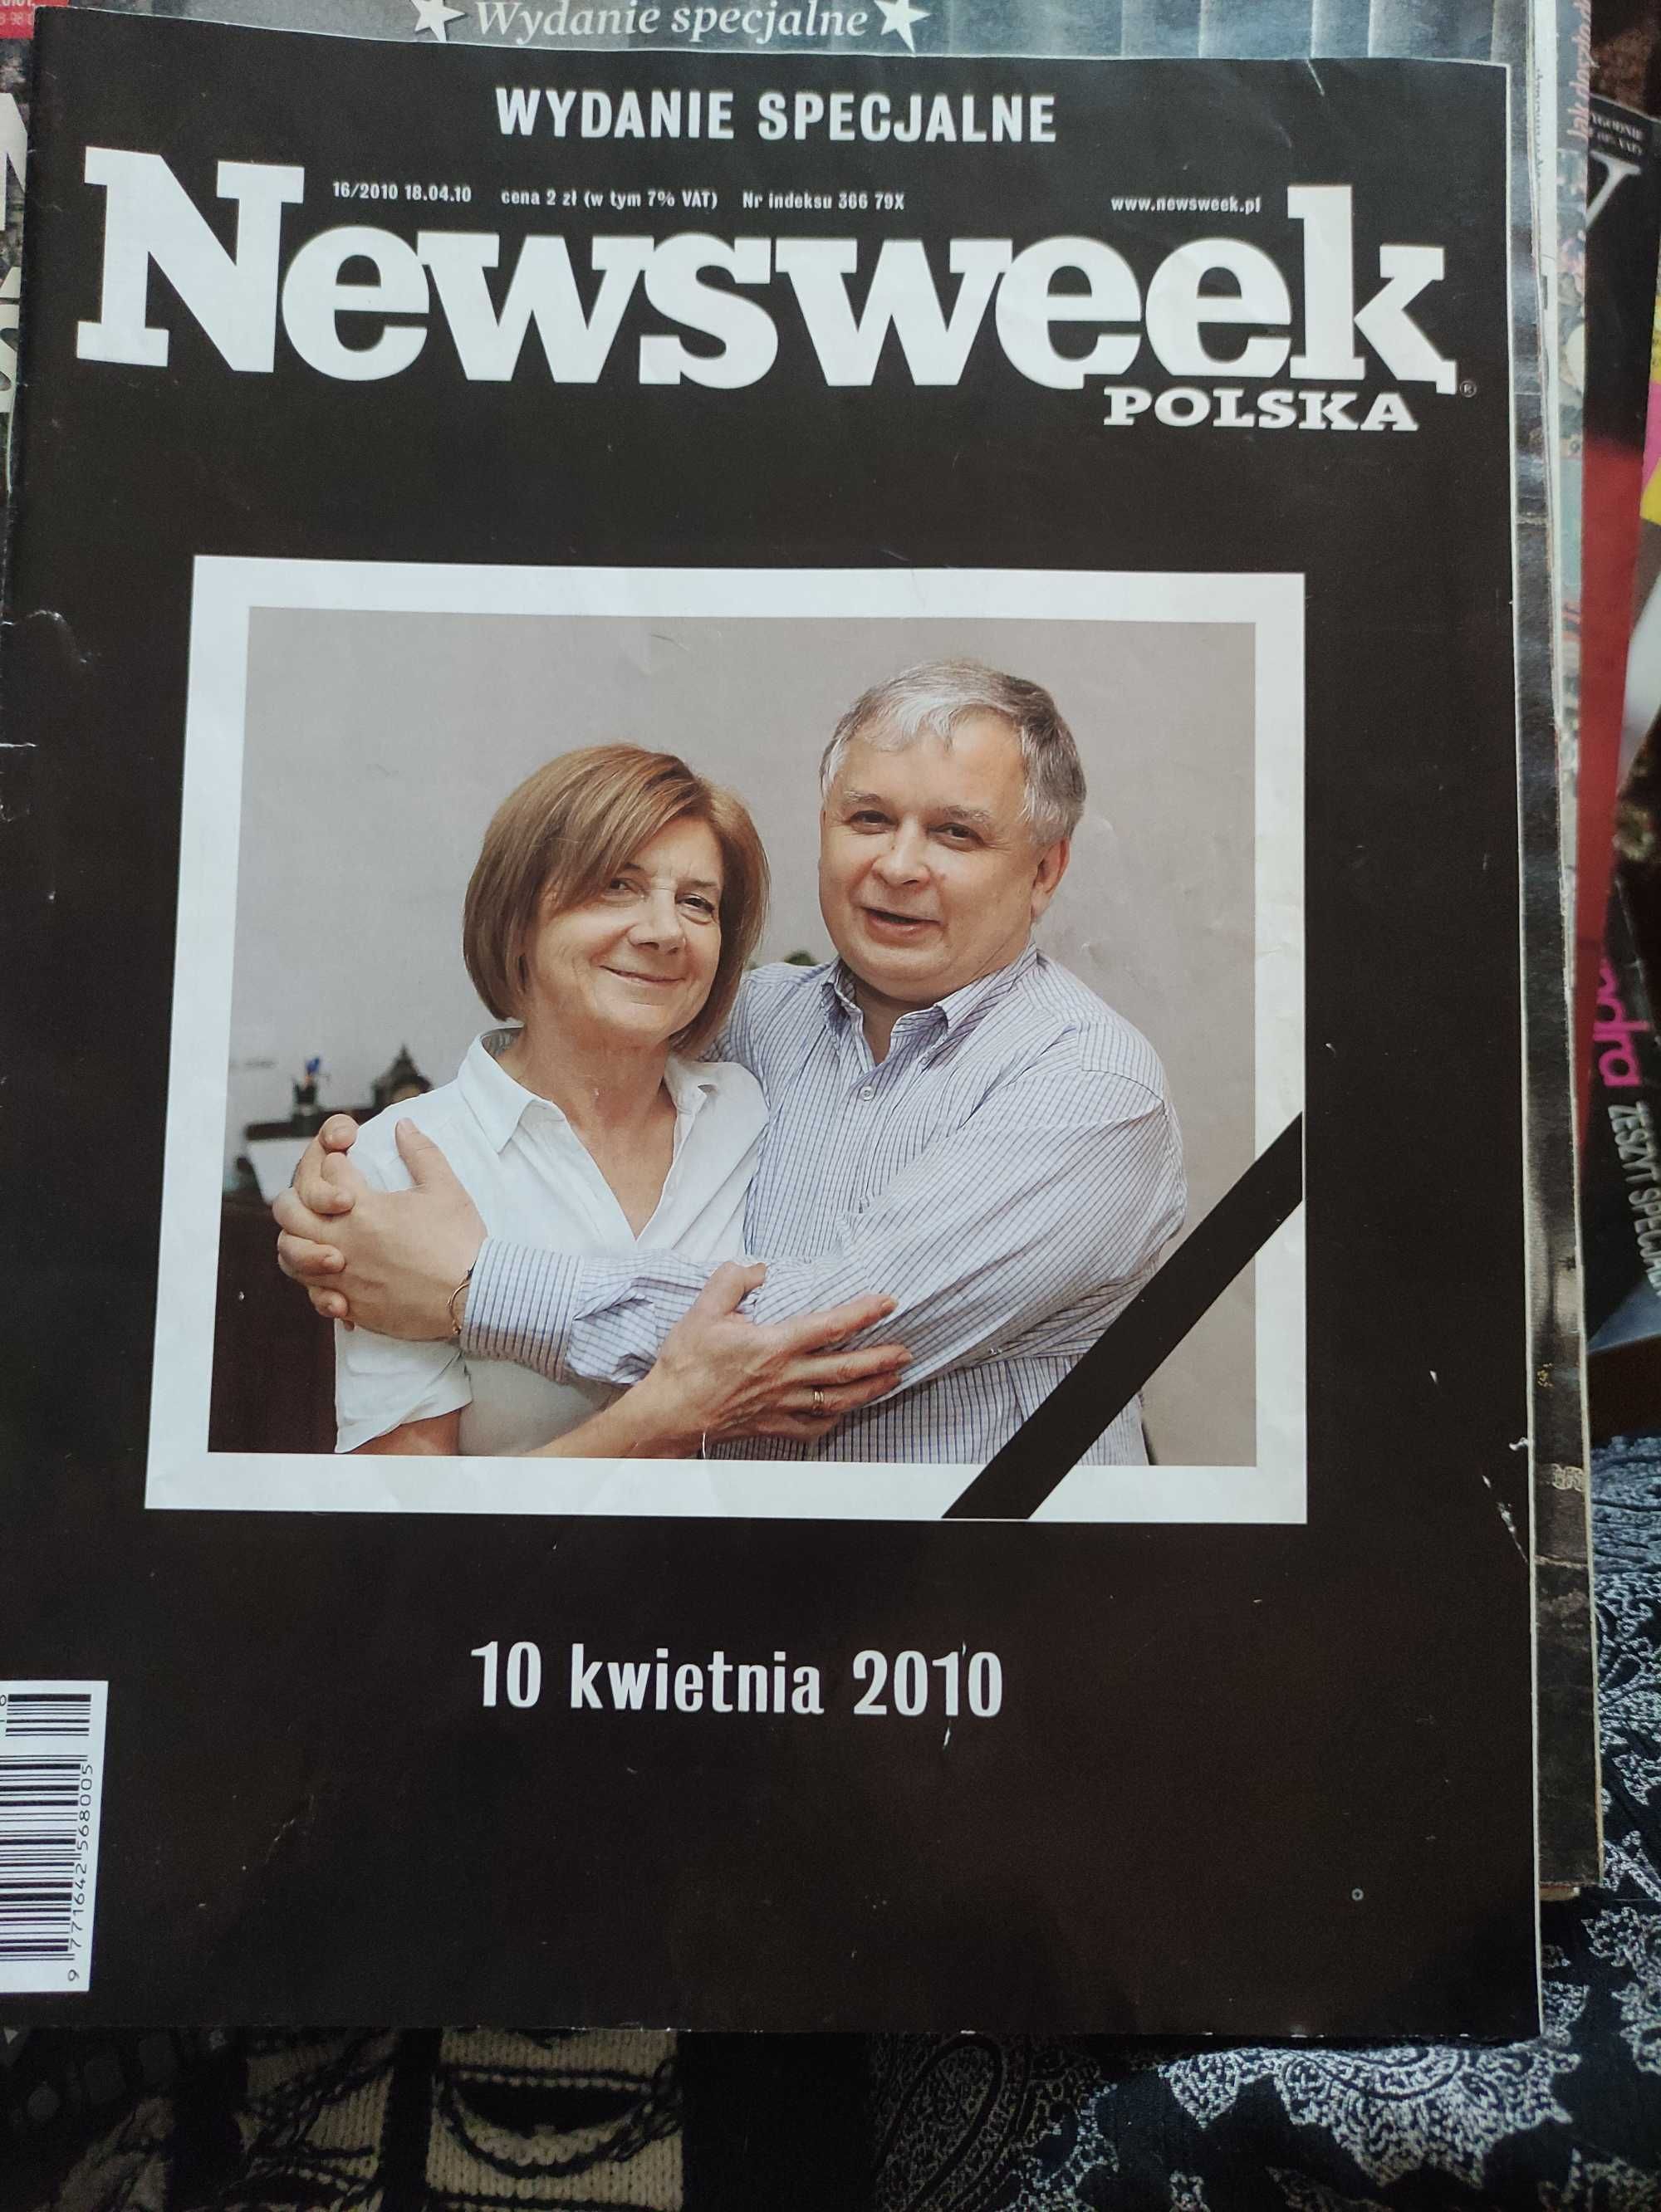 Newsweek wydanie specjalne 18.10.2010 po katastrofie smoleńskiej